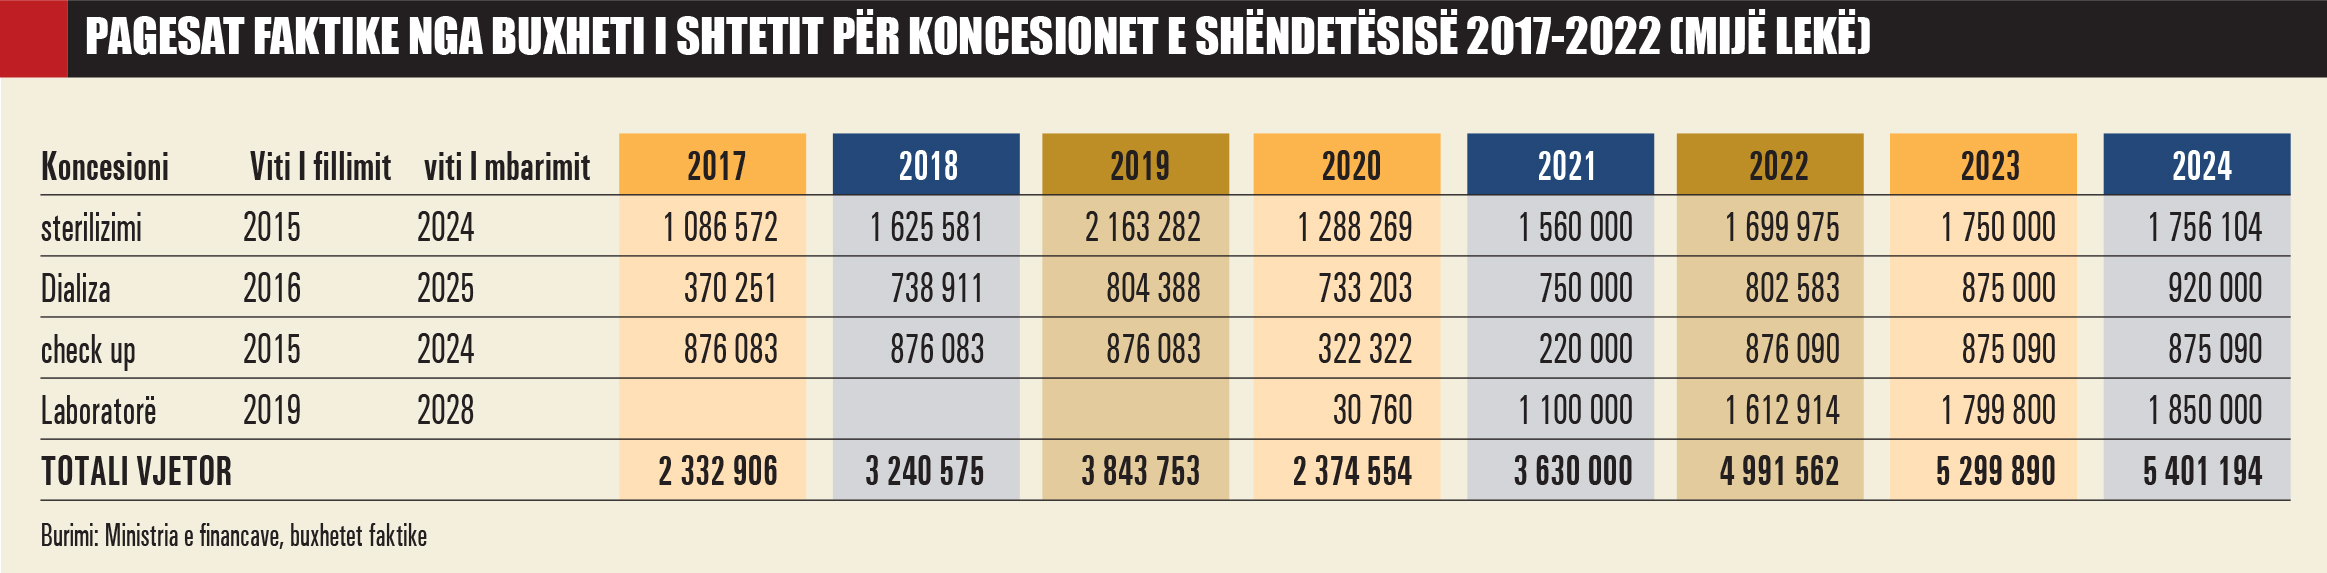 Pagesat-faktike-nga-buxheti-per-koncesionet-e-shendetesise-2017-2022-1106